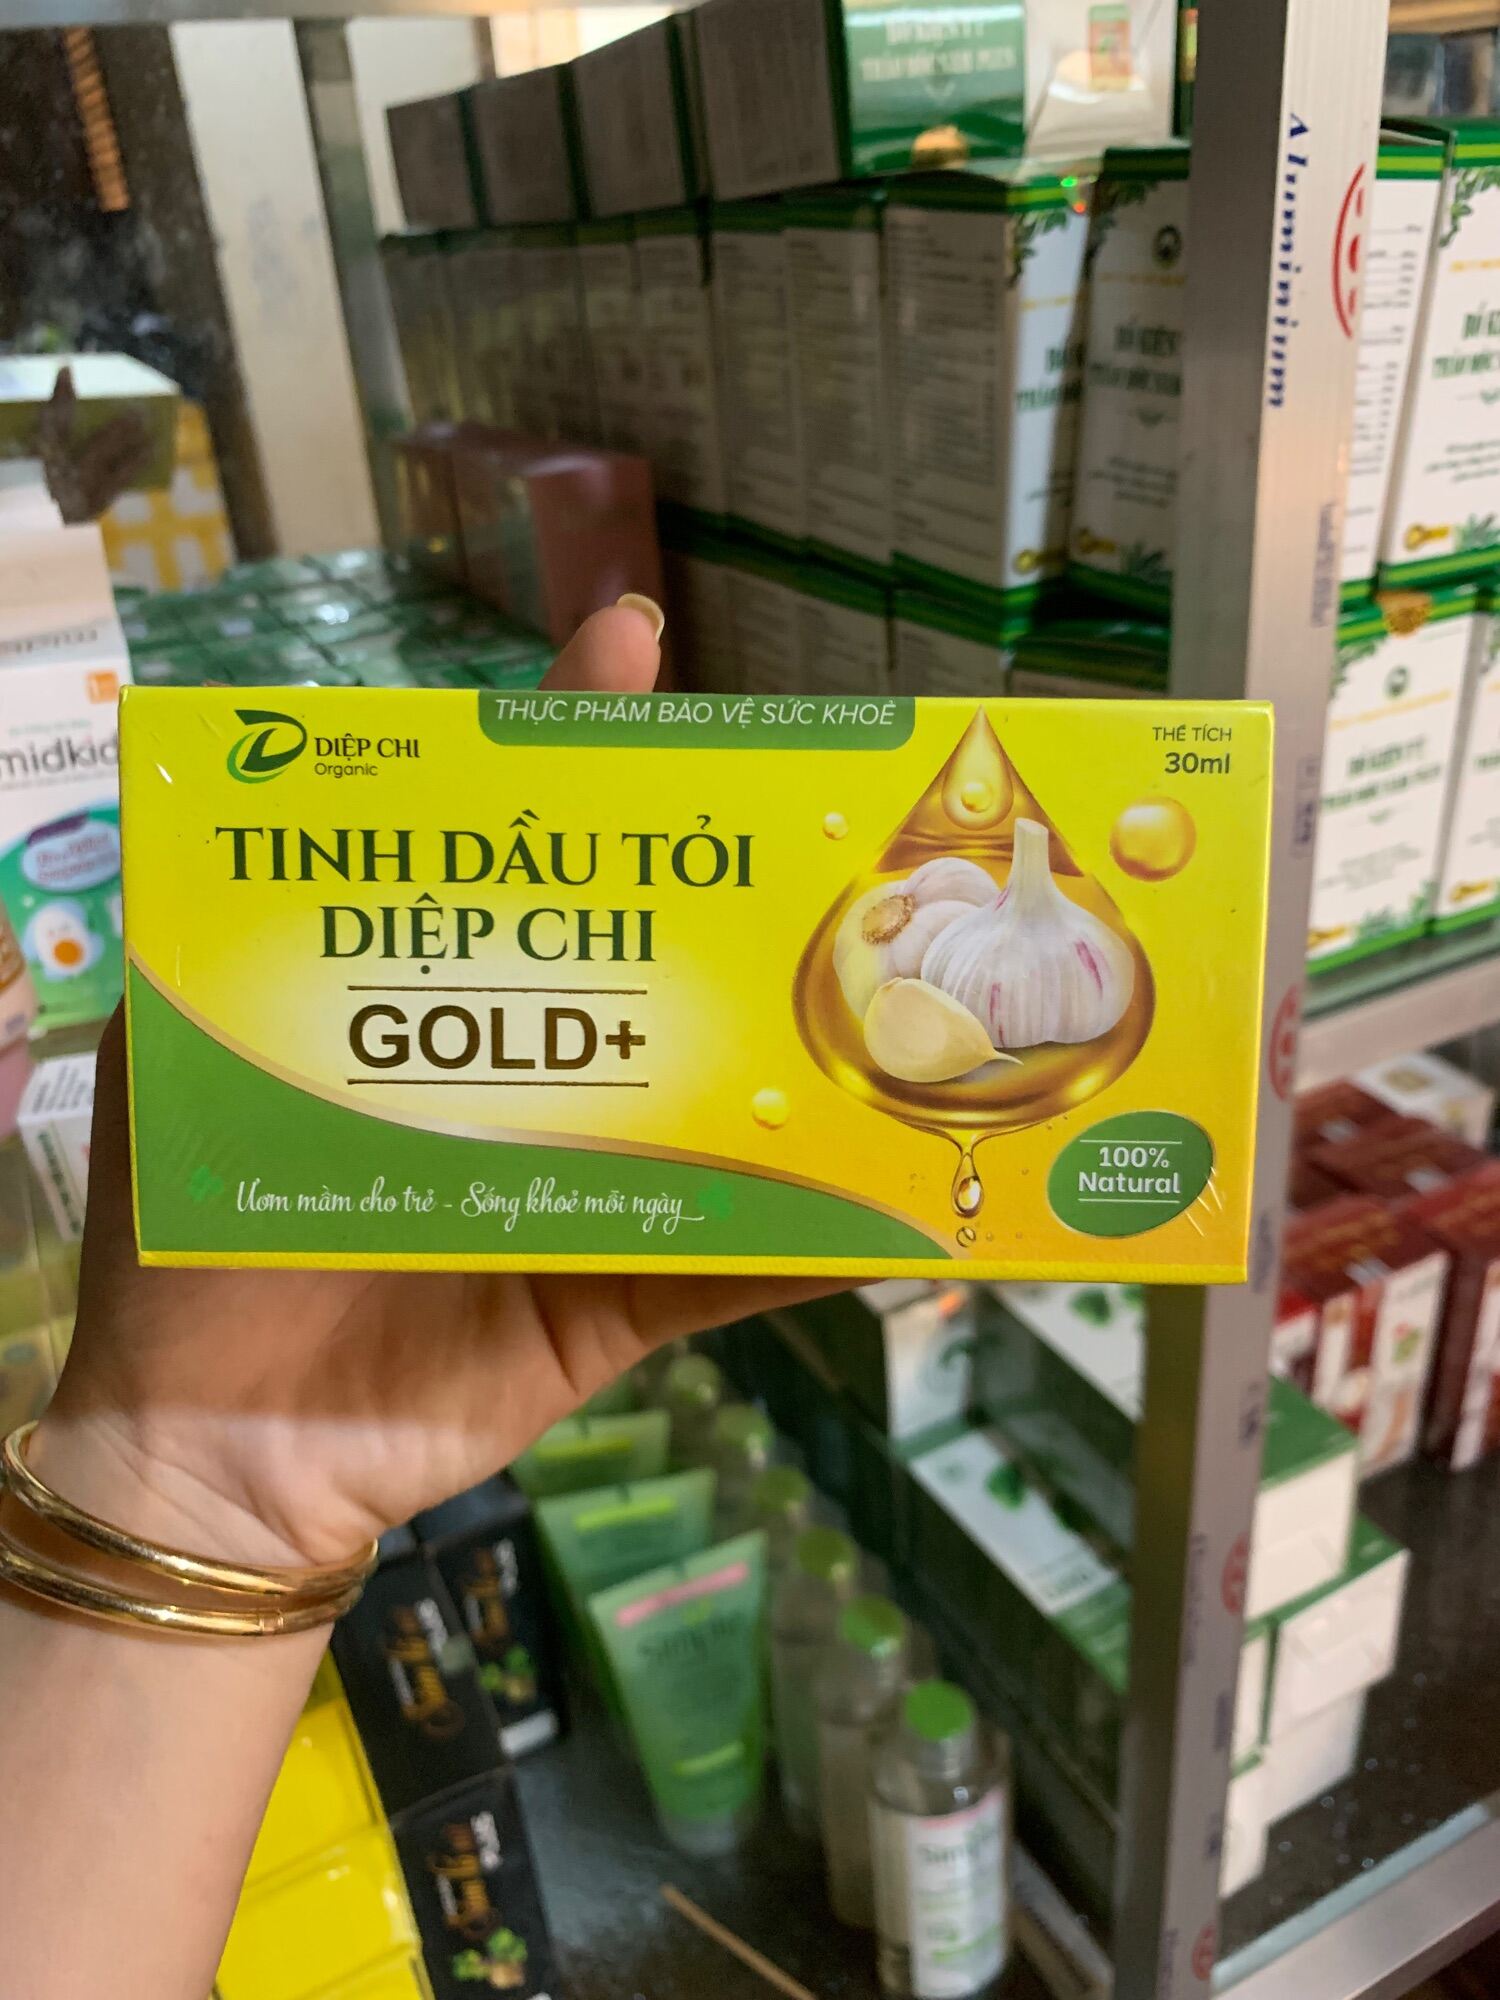 TINH DẦU TỎI DIỆP CHI GOLD+ 30ml